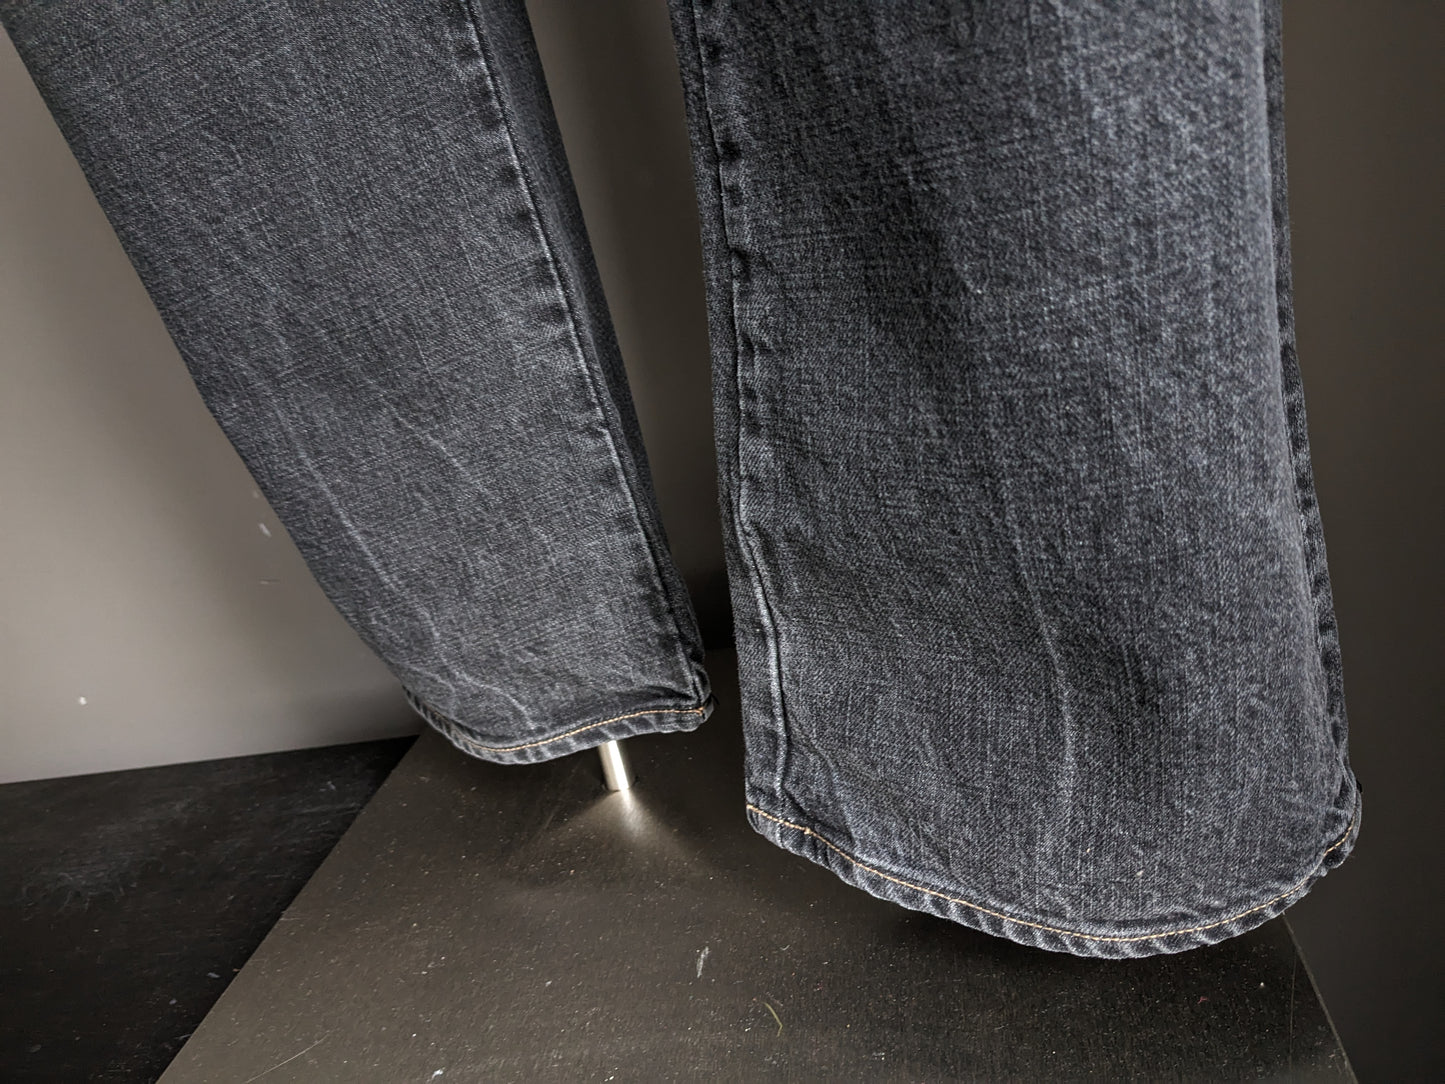 Jeans PME / Pall Mall. Gris noir mélangé. Taille W36 - L32. Tapez "dakota".